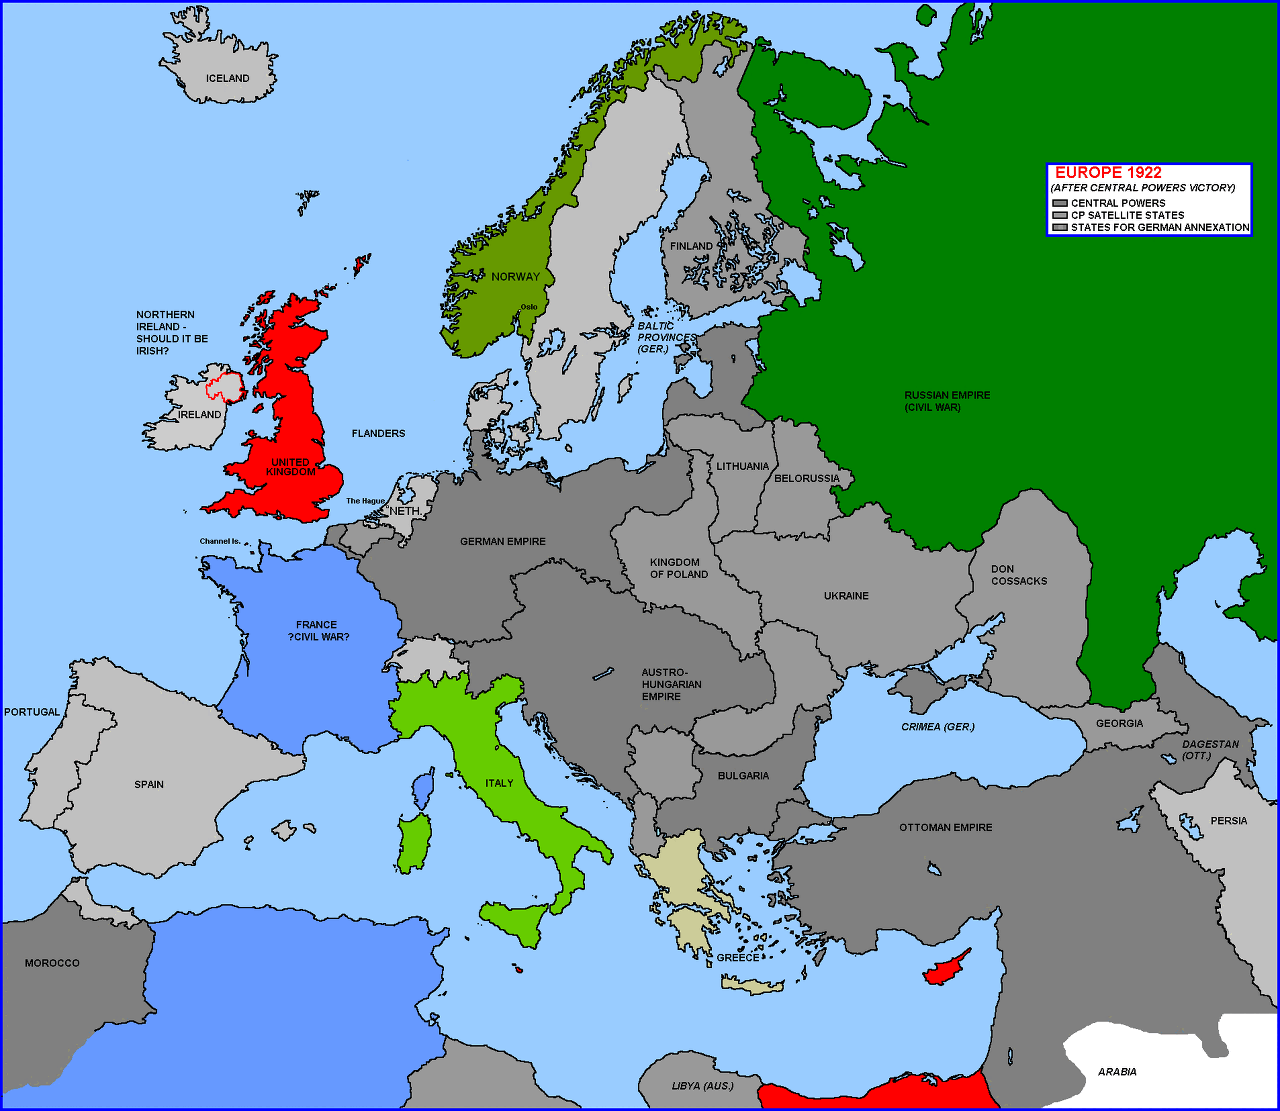 갈리치아만 잃는 오스트리아-헝가리 제국